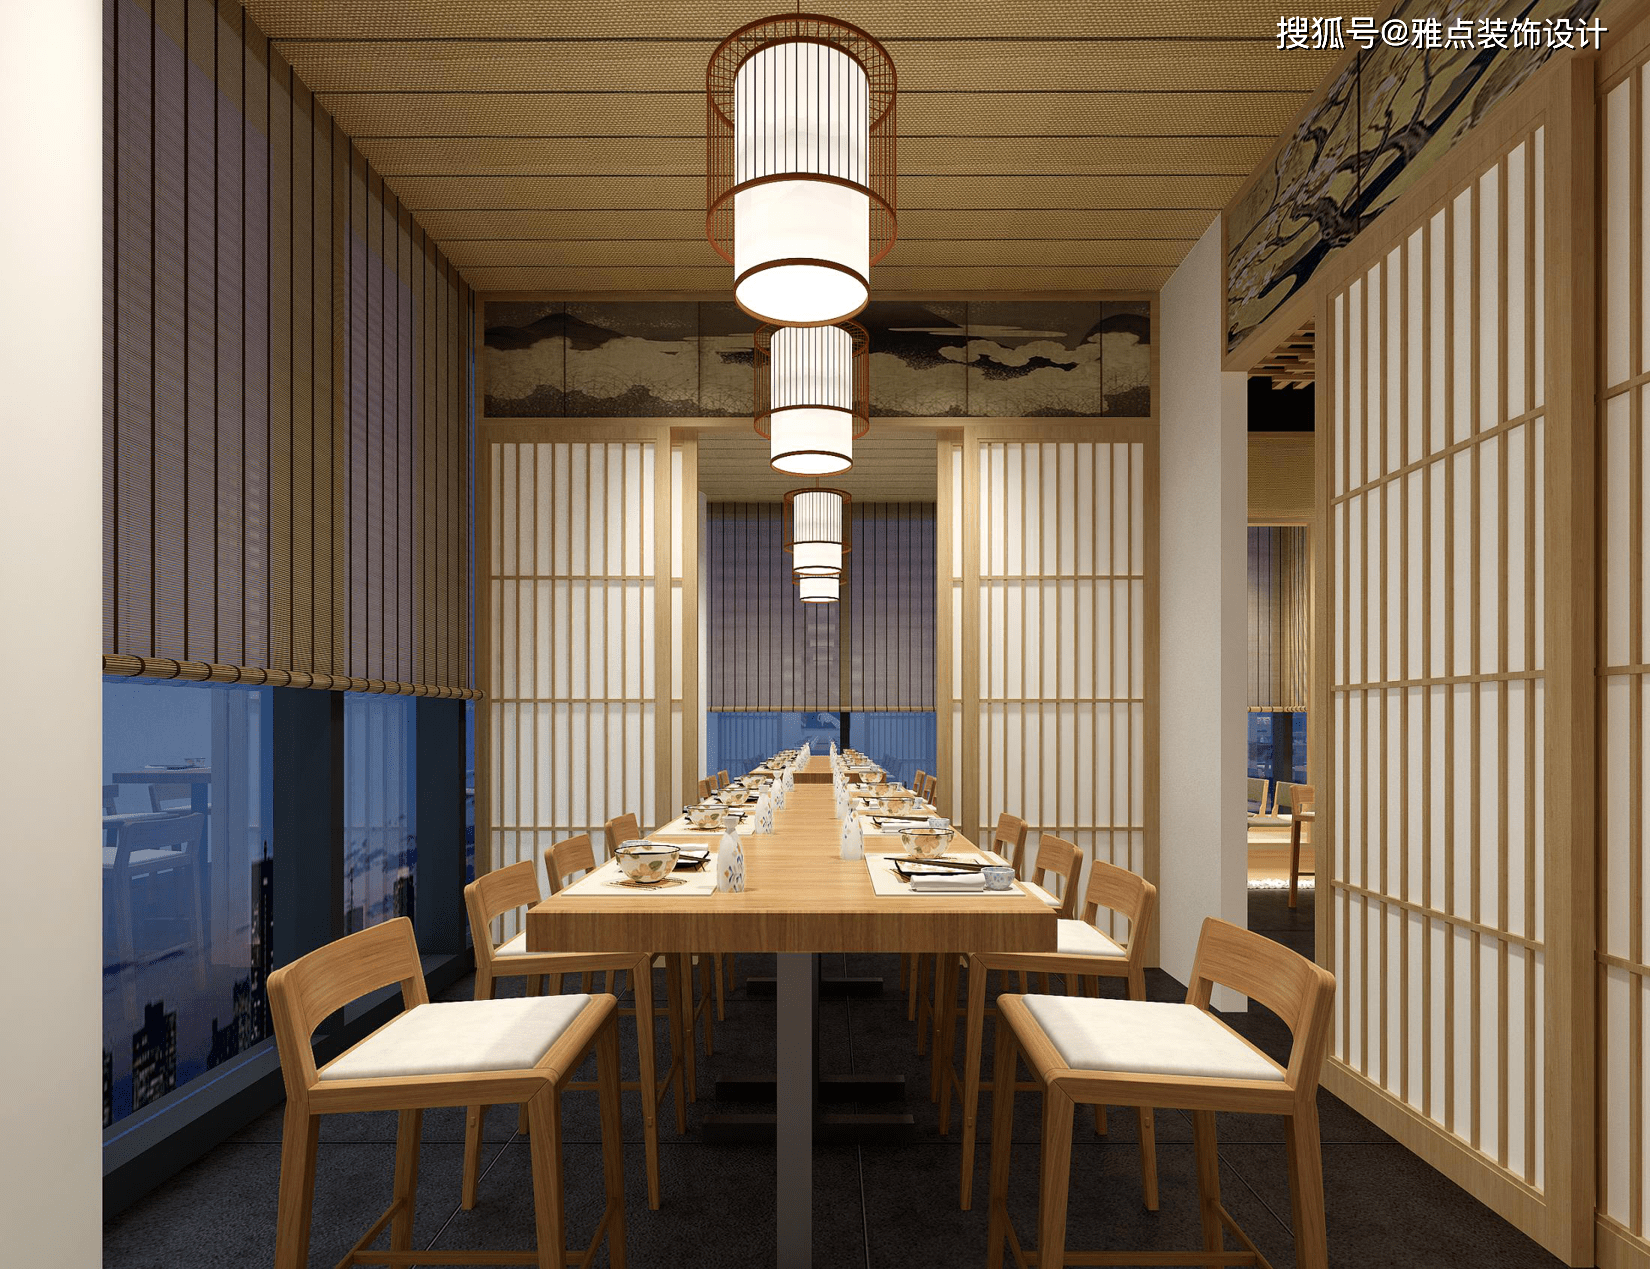 日本料理店装修设计方案分享